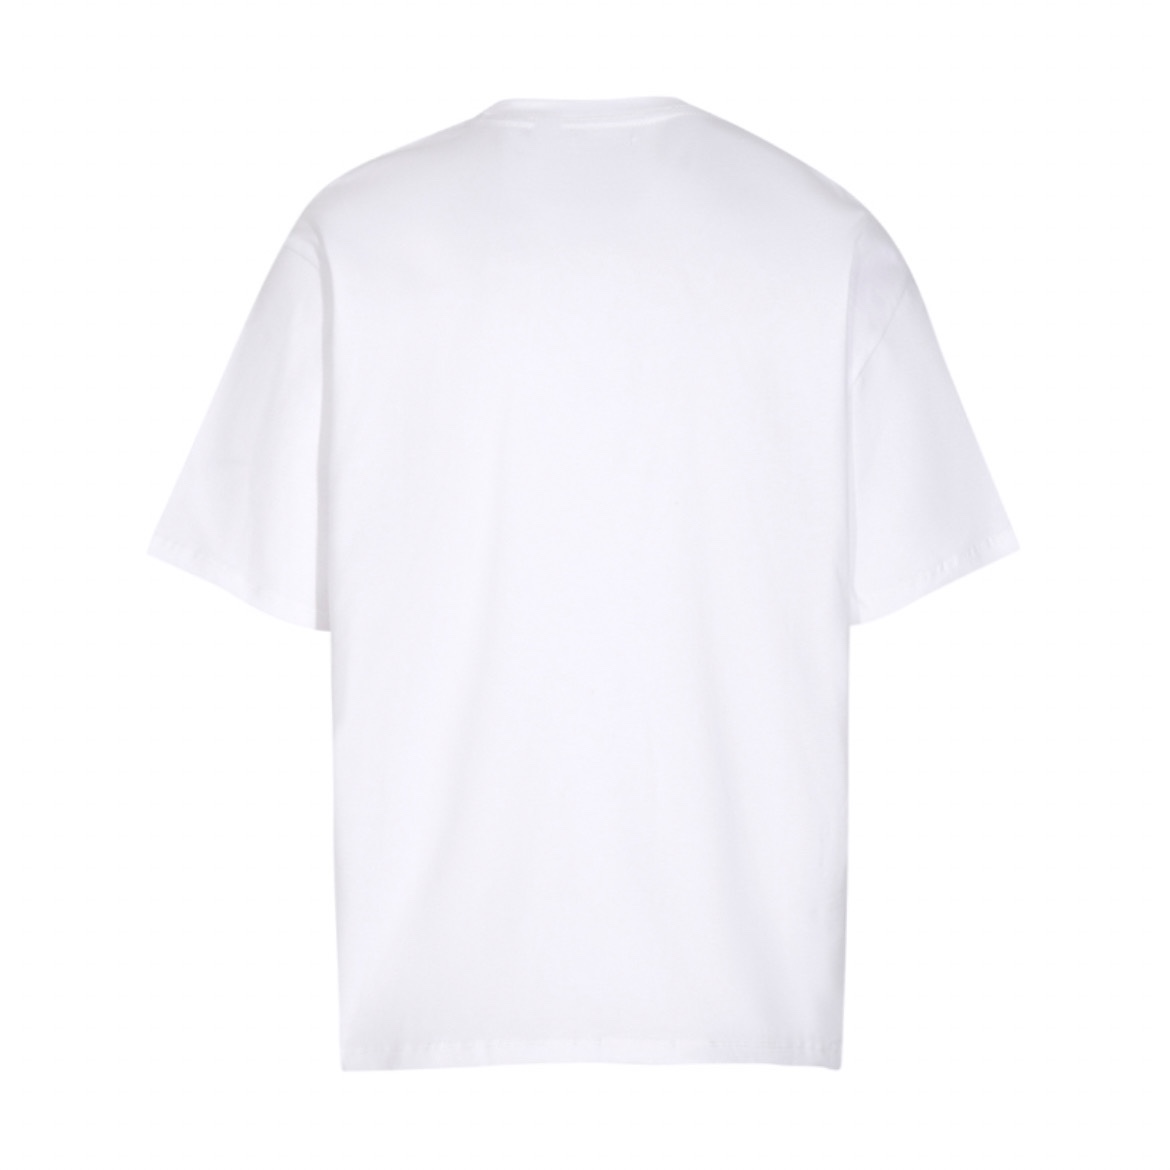 抜群の吸汗性ギャラリーデプト 公式スーパーコピー 半袖Tシャツ シンプル トップス ホワイト_2